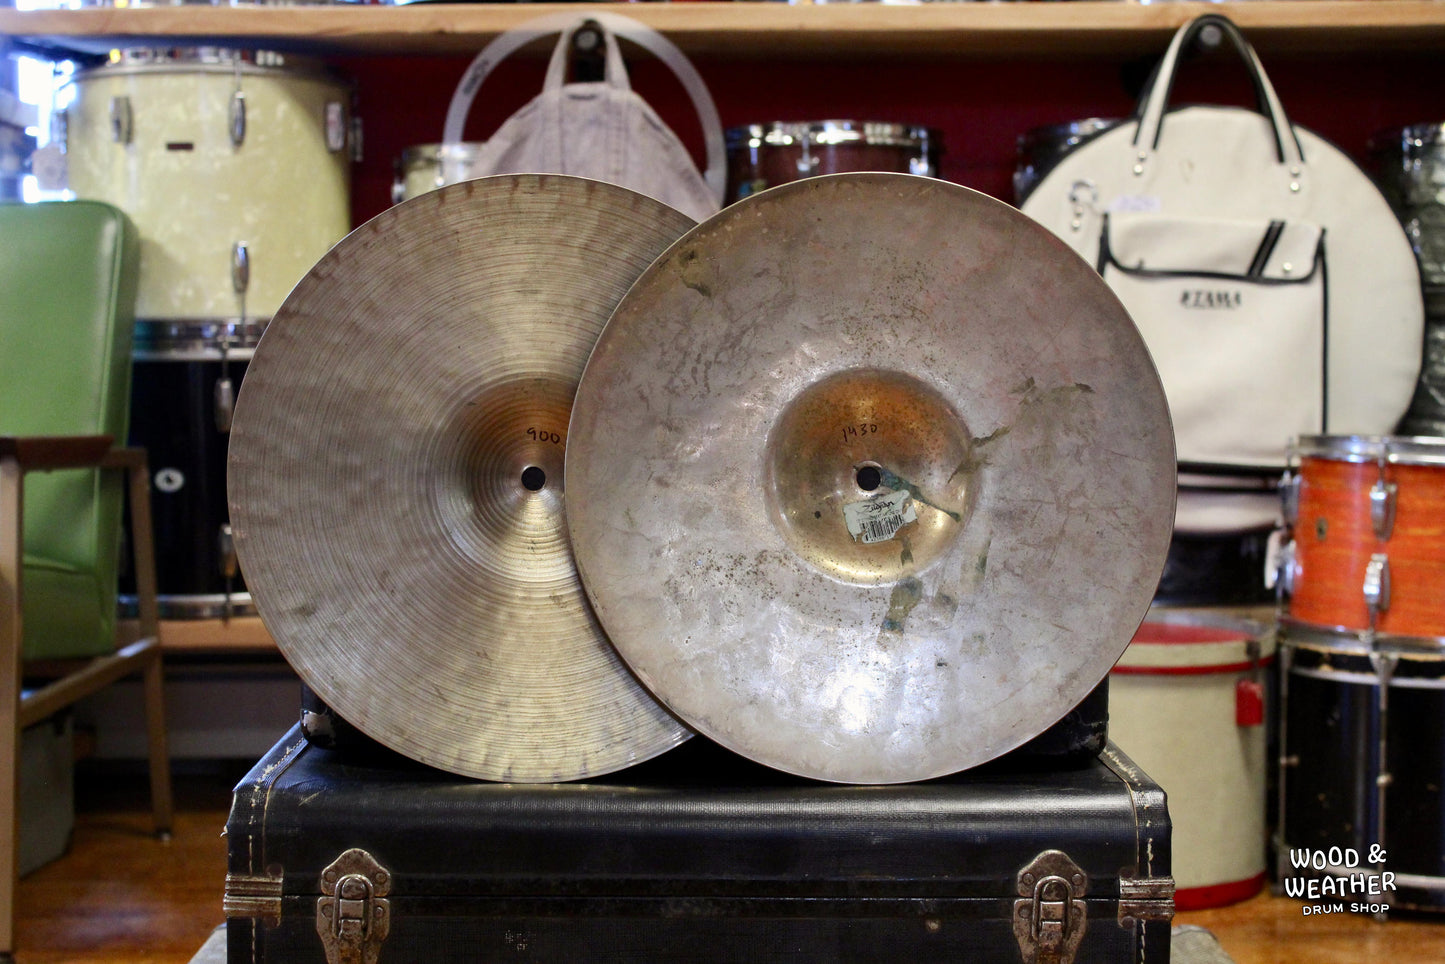 1997 Zildjian 13" K / Z Dyno Beat Hi-Hat Cymbals 900/1430g